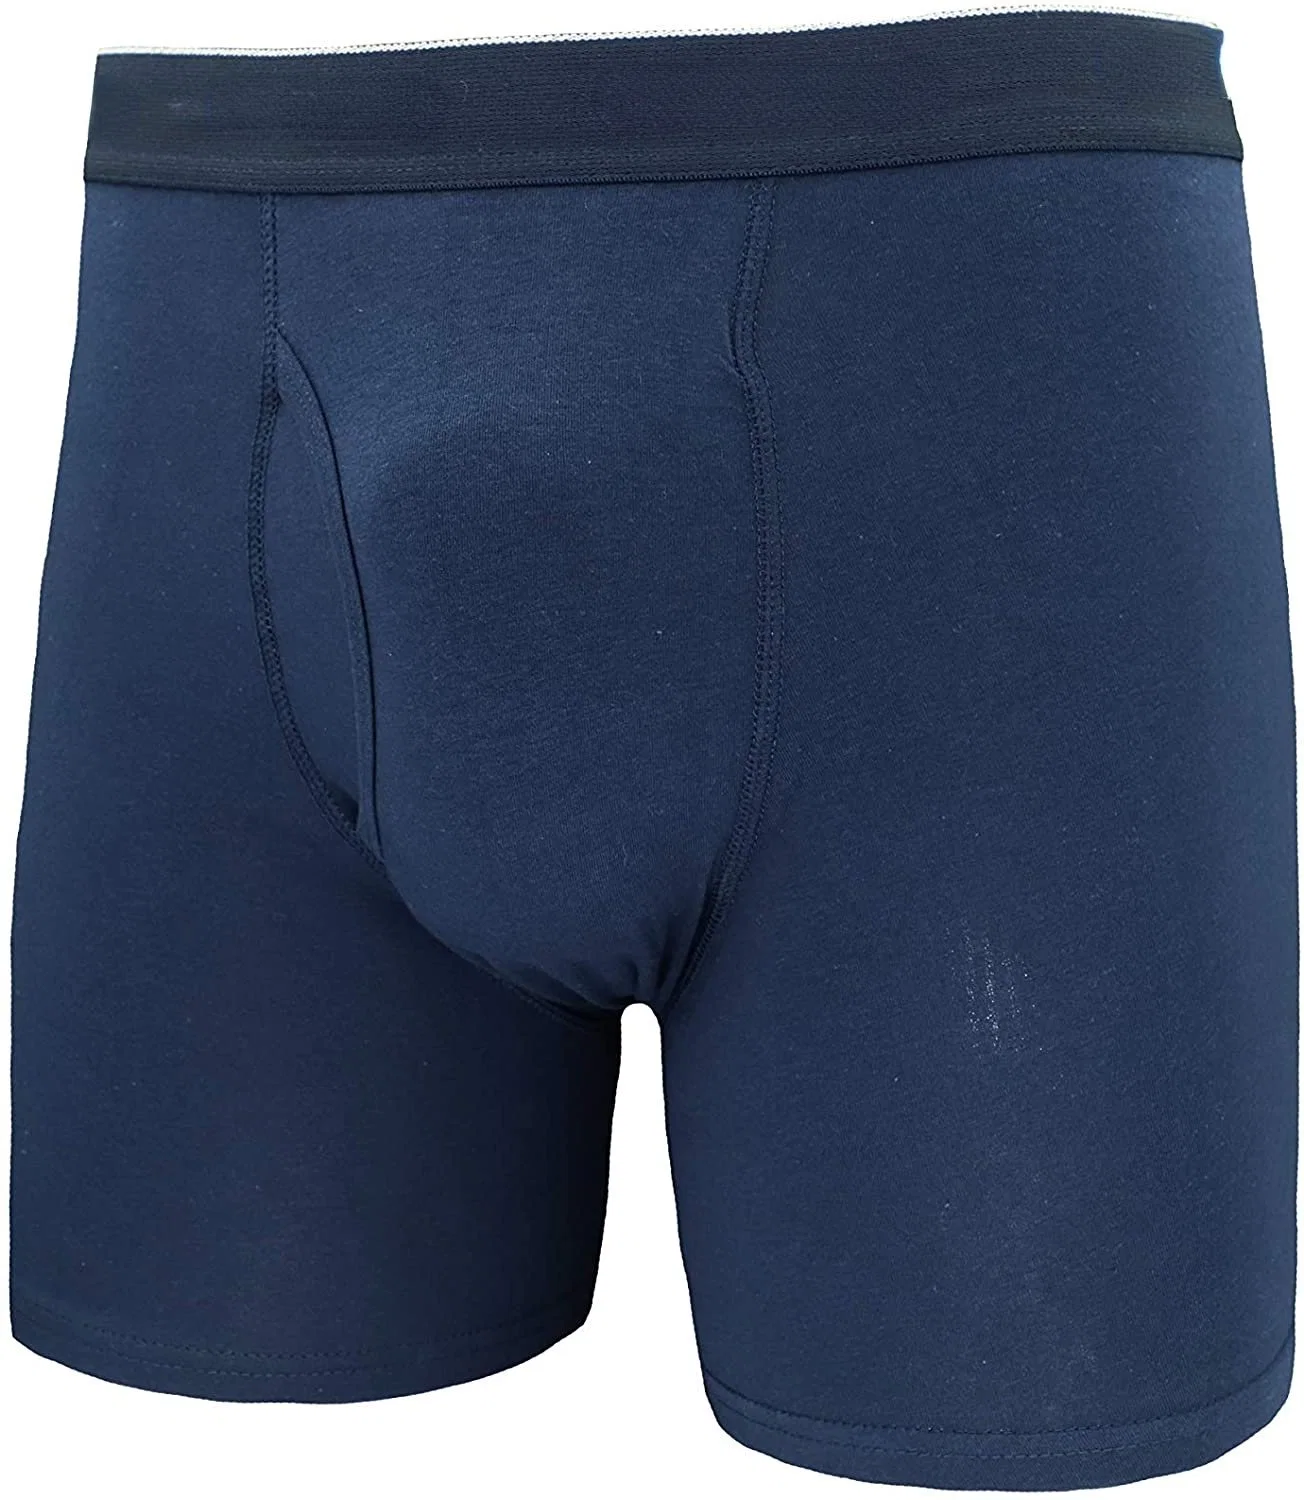 Men Boxer Briefs Cotton Spandex Soft Tagless Underwear Kid Underwear